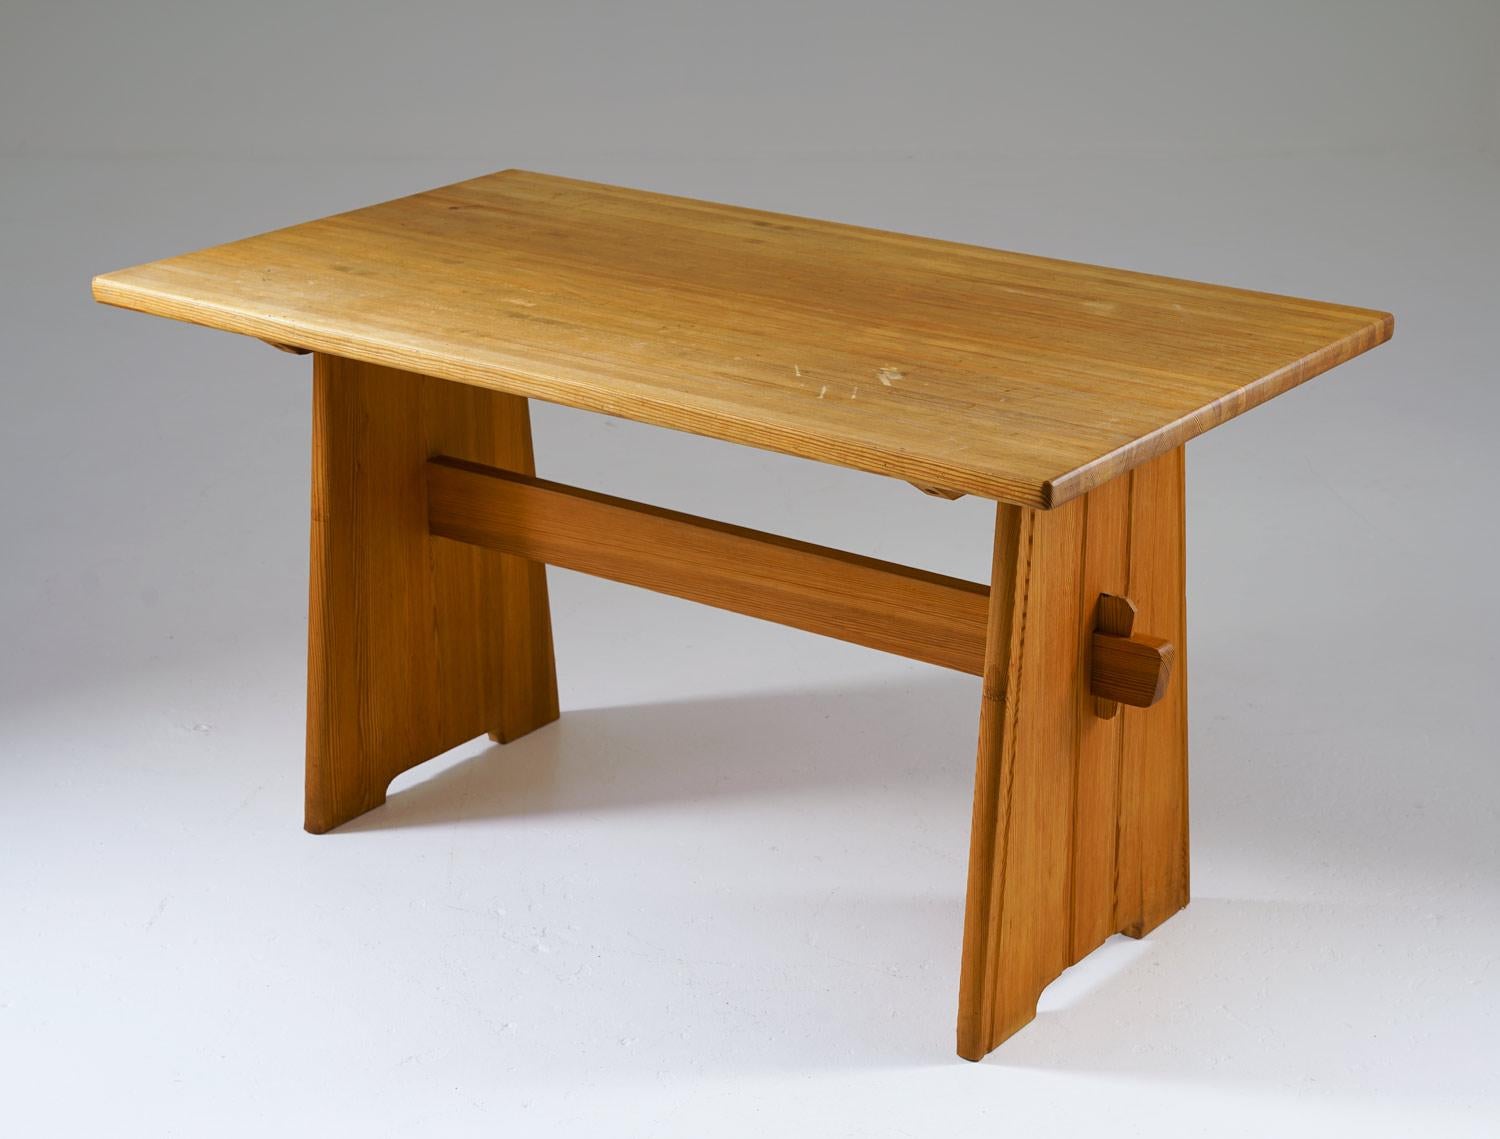 Ein charmanter und stabiler Esstisch aus Kiefernholz, der in den 1950er Jahren in Schweden hergestellt wurde und möglicherweise von Göran Malmvall für den angesehenen Möbelhersteller Svensk Fur entworfen wurde. Dieser Tisch erinnert an den begehrten